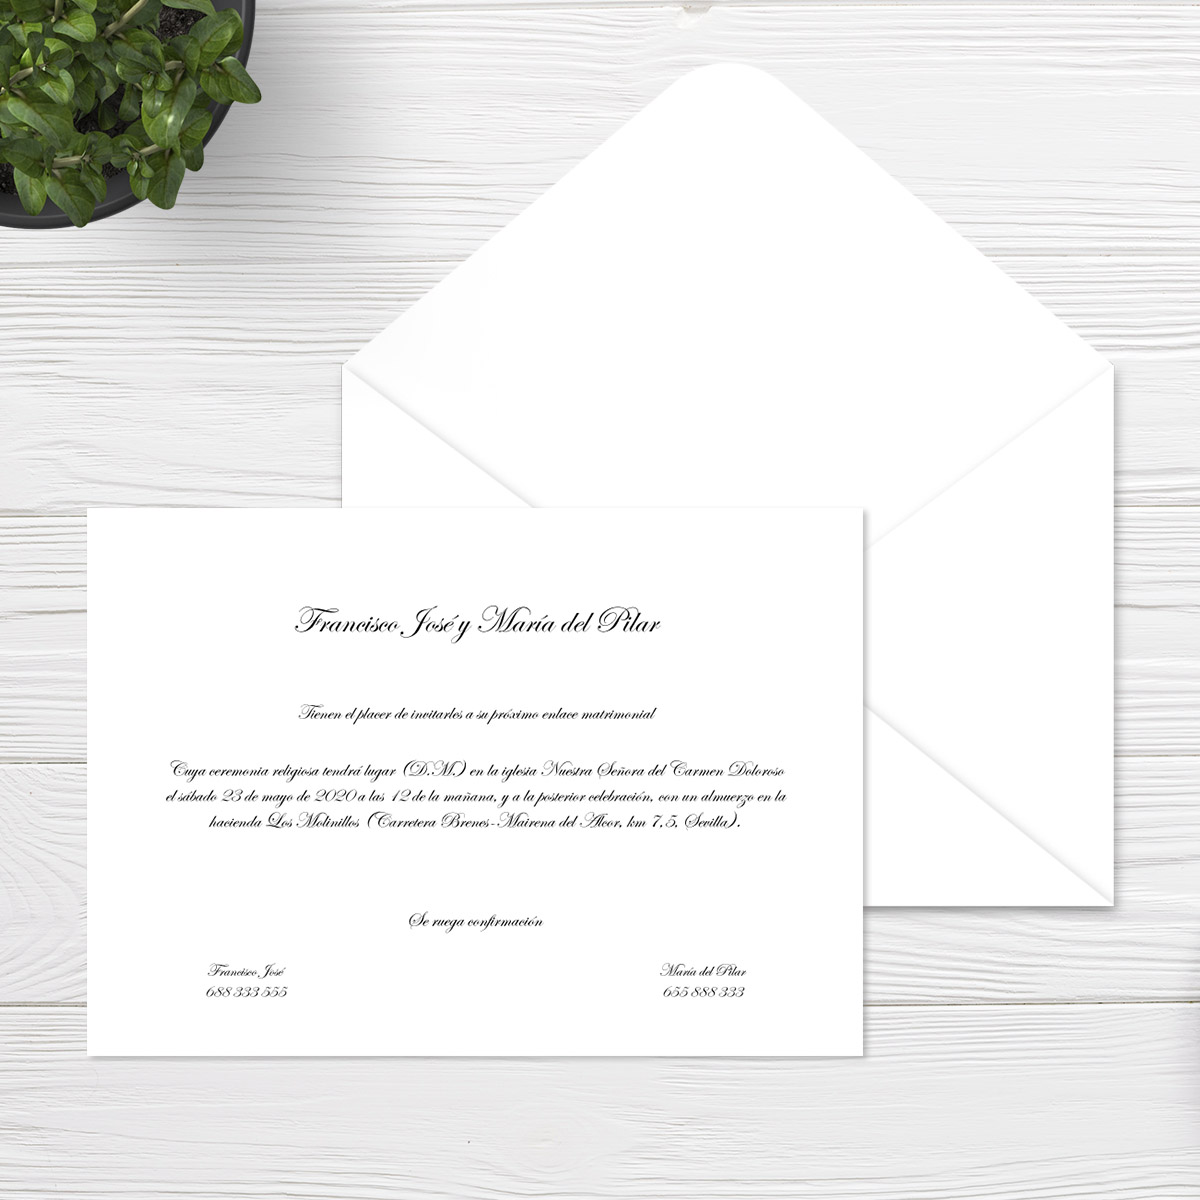 Invitación | Wedding Design